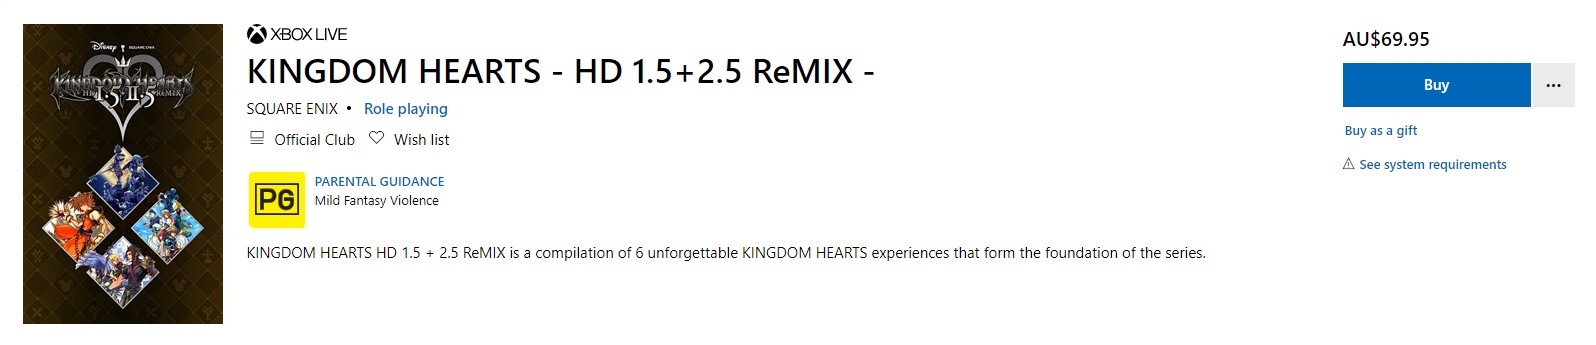 重温回忆 《王国之心》HD高清复刻系列登陆Xbox 